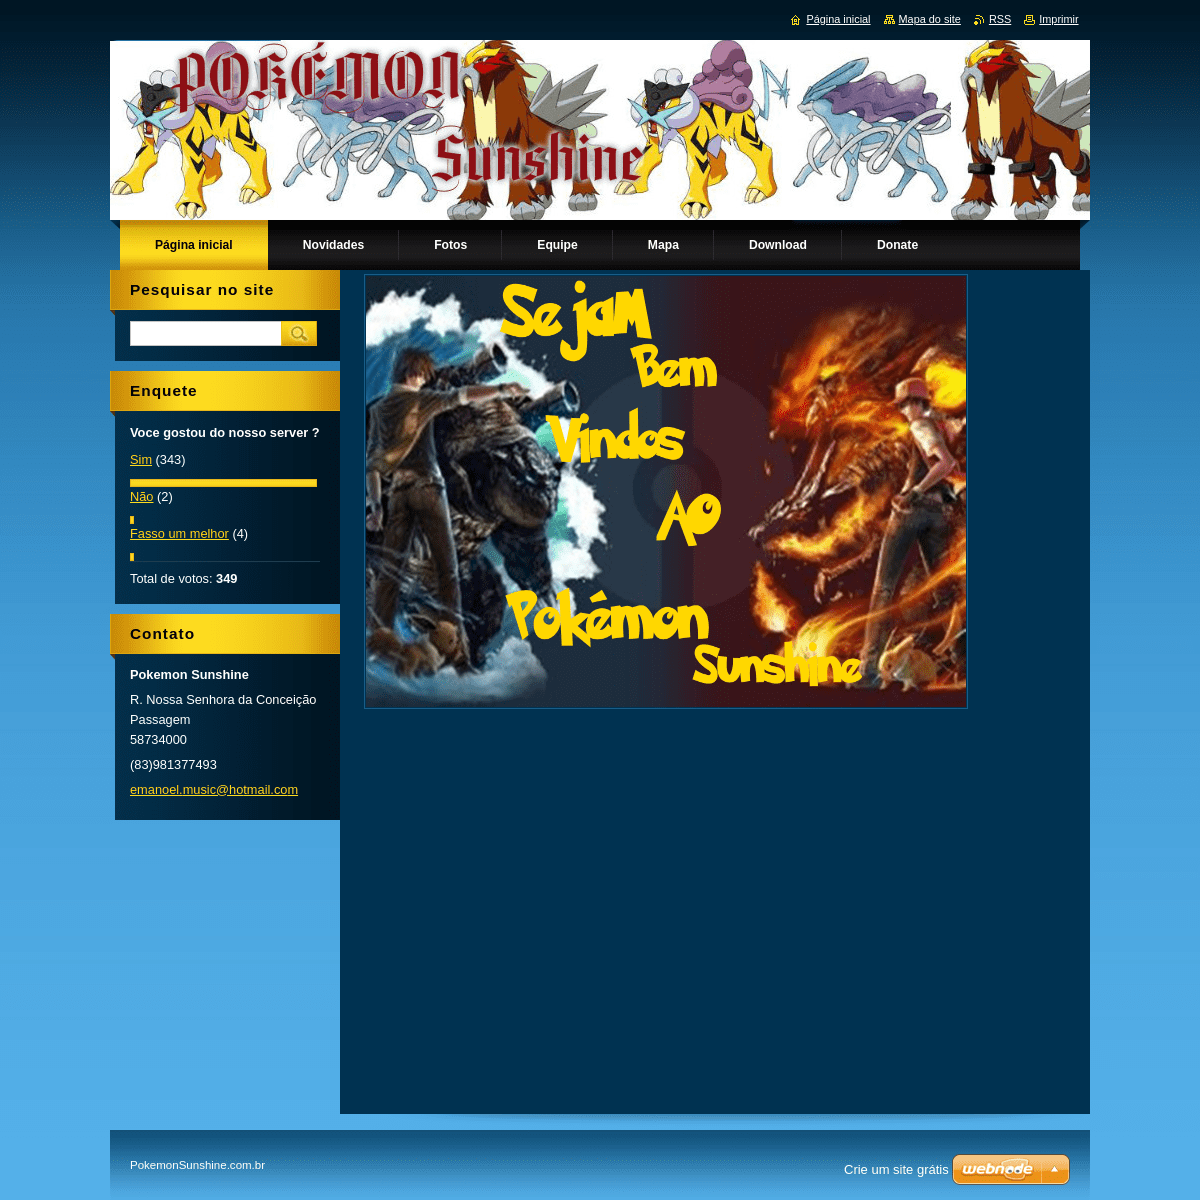 A complete backup of pokemonultimaterevlutiono.webnode.com